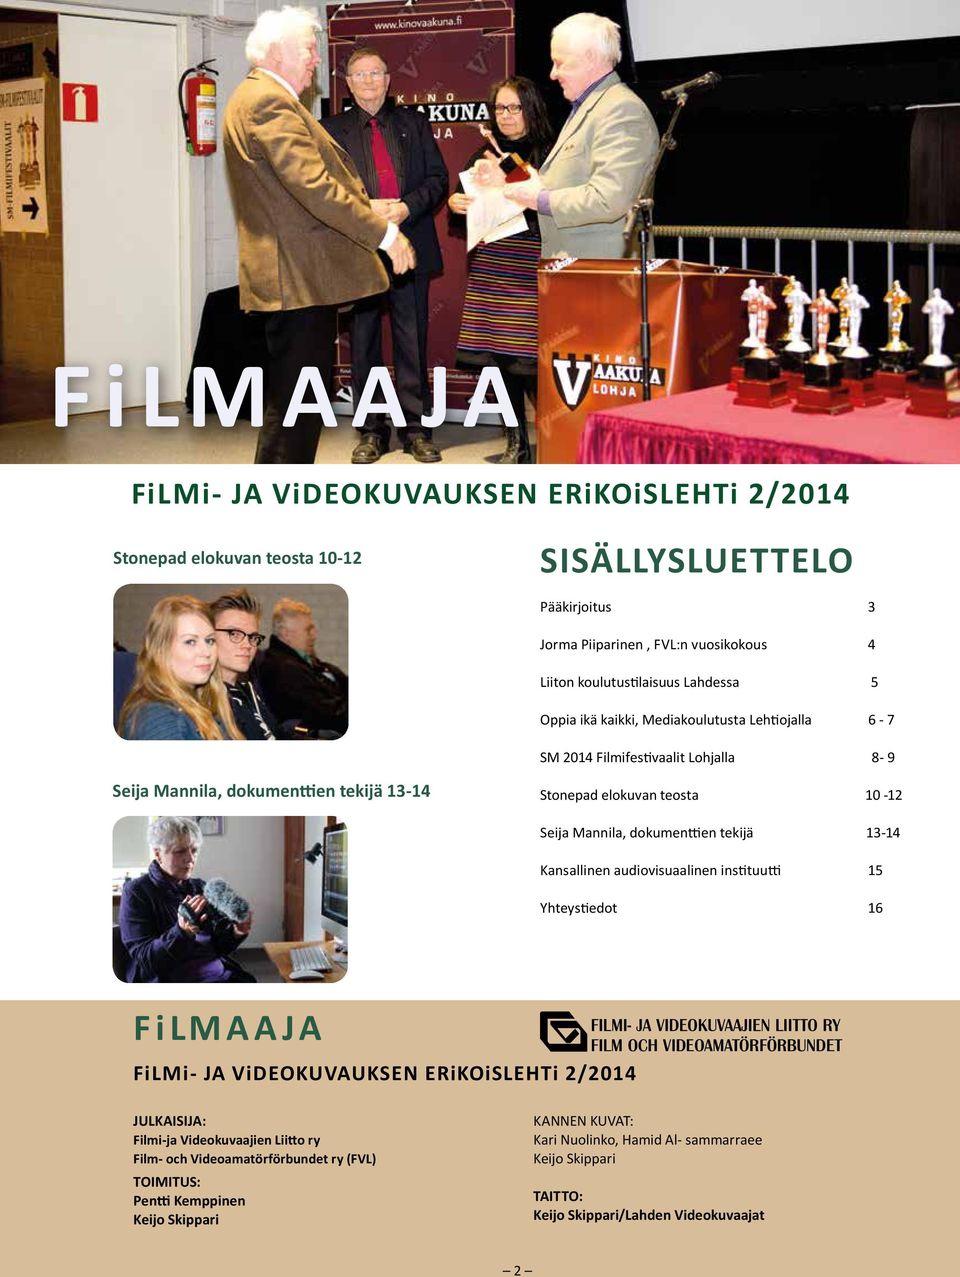 dokumenttien tekijä 13-14 Kansallinen audiovisuaalinen instituutti 15 Yhteys tiedot 16 FiLMAAJA FiLMi- JA ViDEOKUVAUKSEN ERiKOiSLEHTi 2/2014 JULKAISIJA: Filmi-ja Videokuvaajien Liitto ry